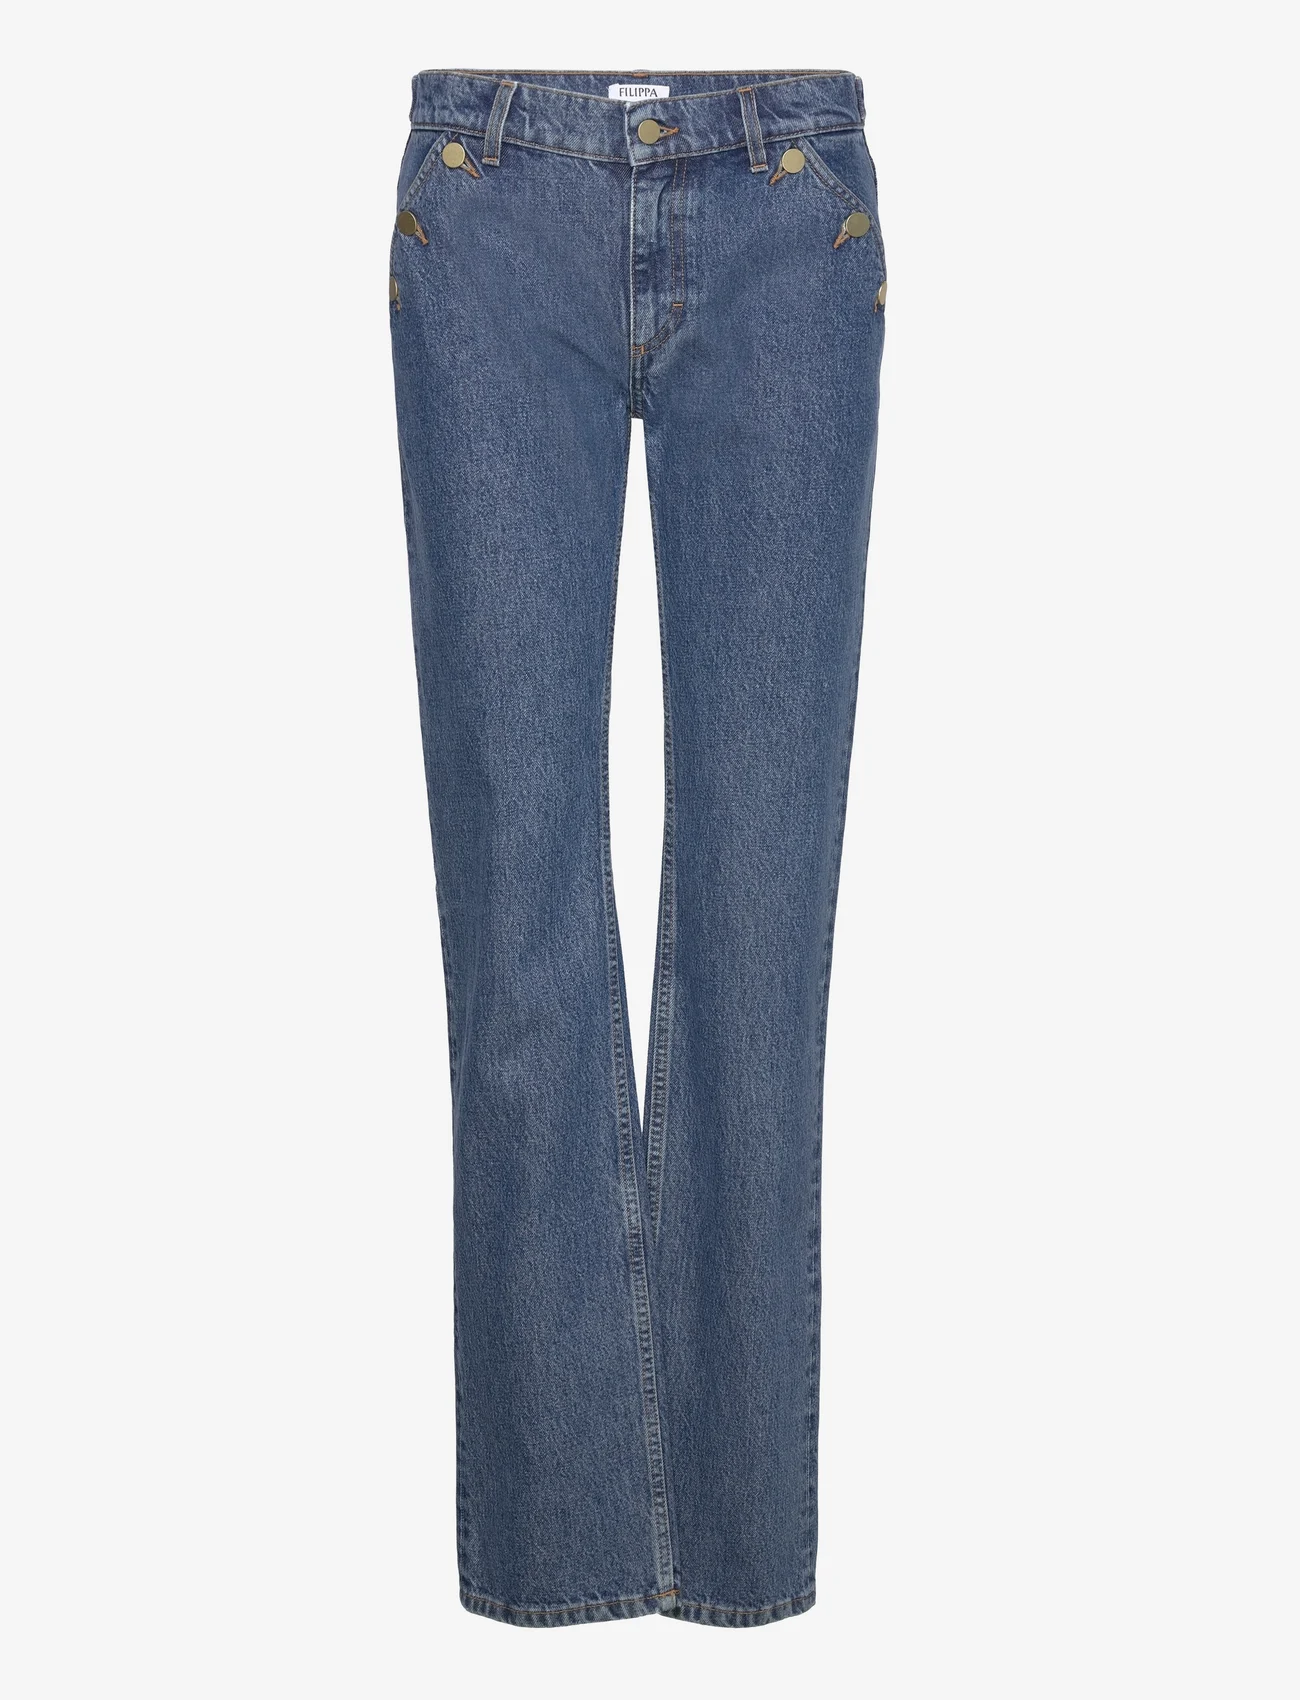 Filippa K - Classic Straight Jeans - suorat farkut - washed mid - 0